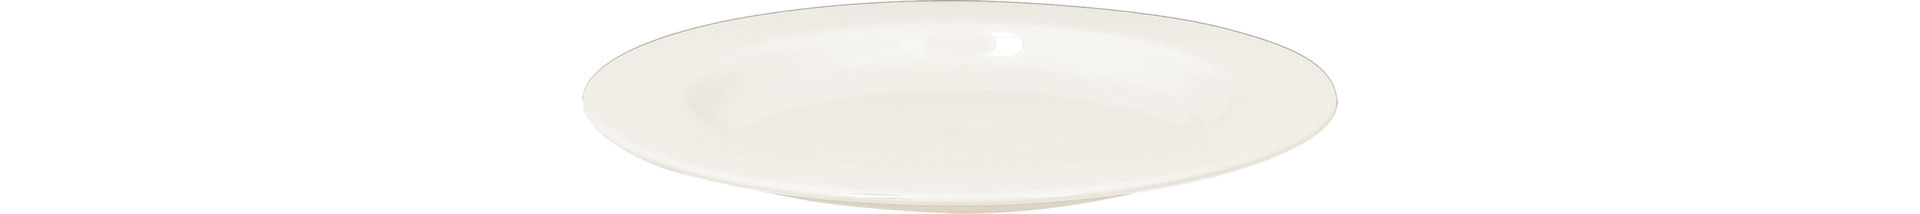 Deckel rund / Teller amaze 175 mm plain-white